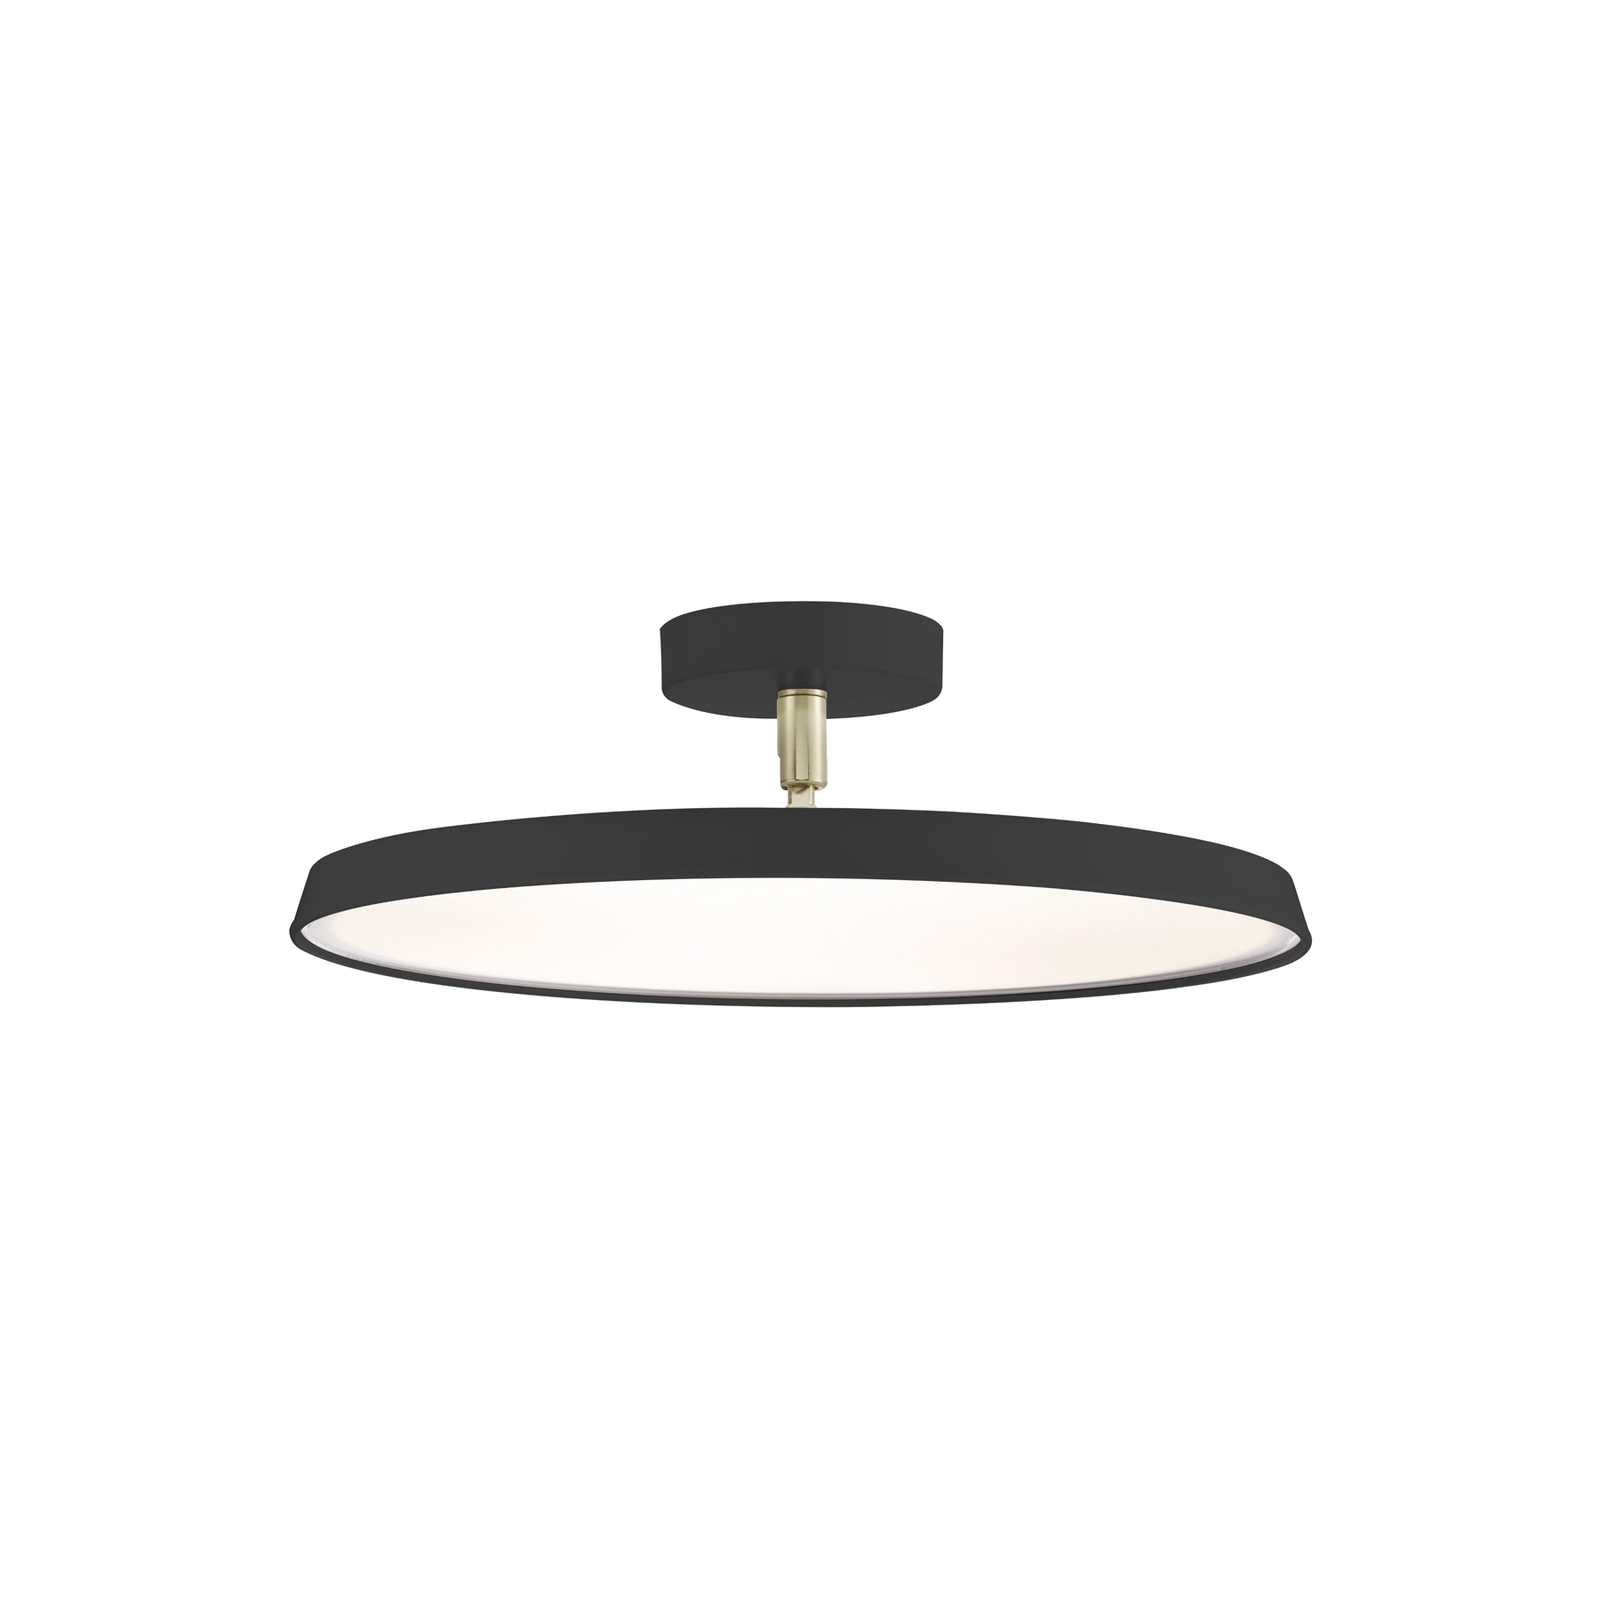 LED stropné svietidlo Kaito 2 Pro, Ø 40 cm, čierna farba, rozstupy